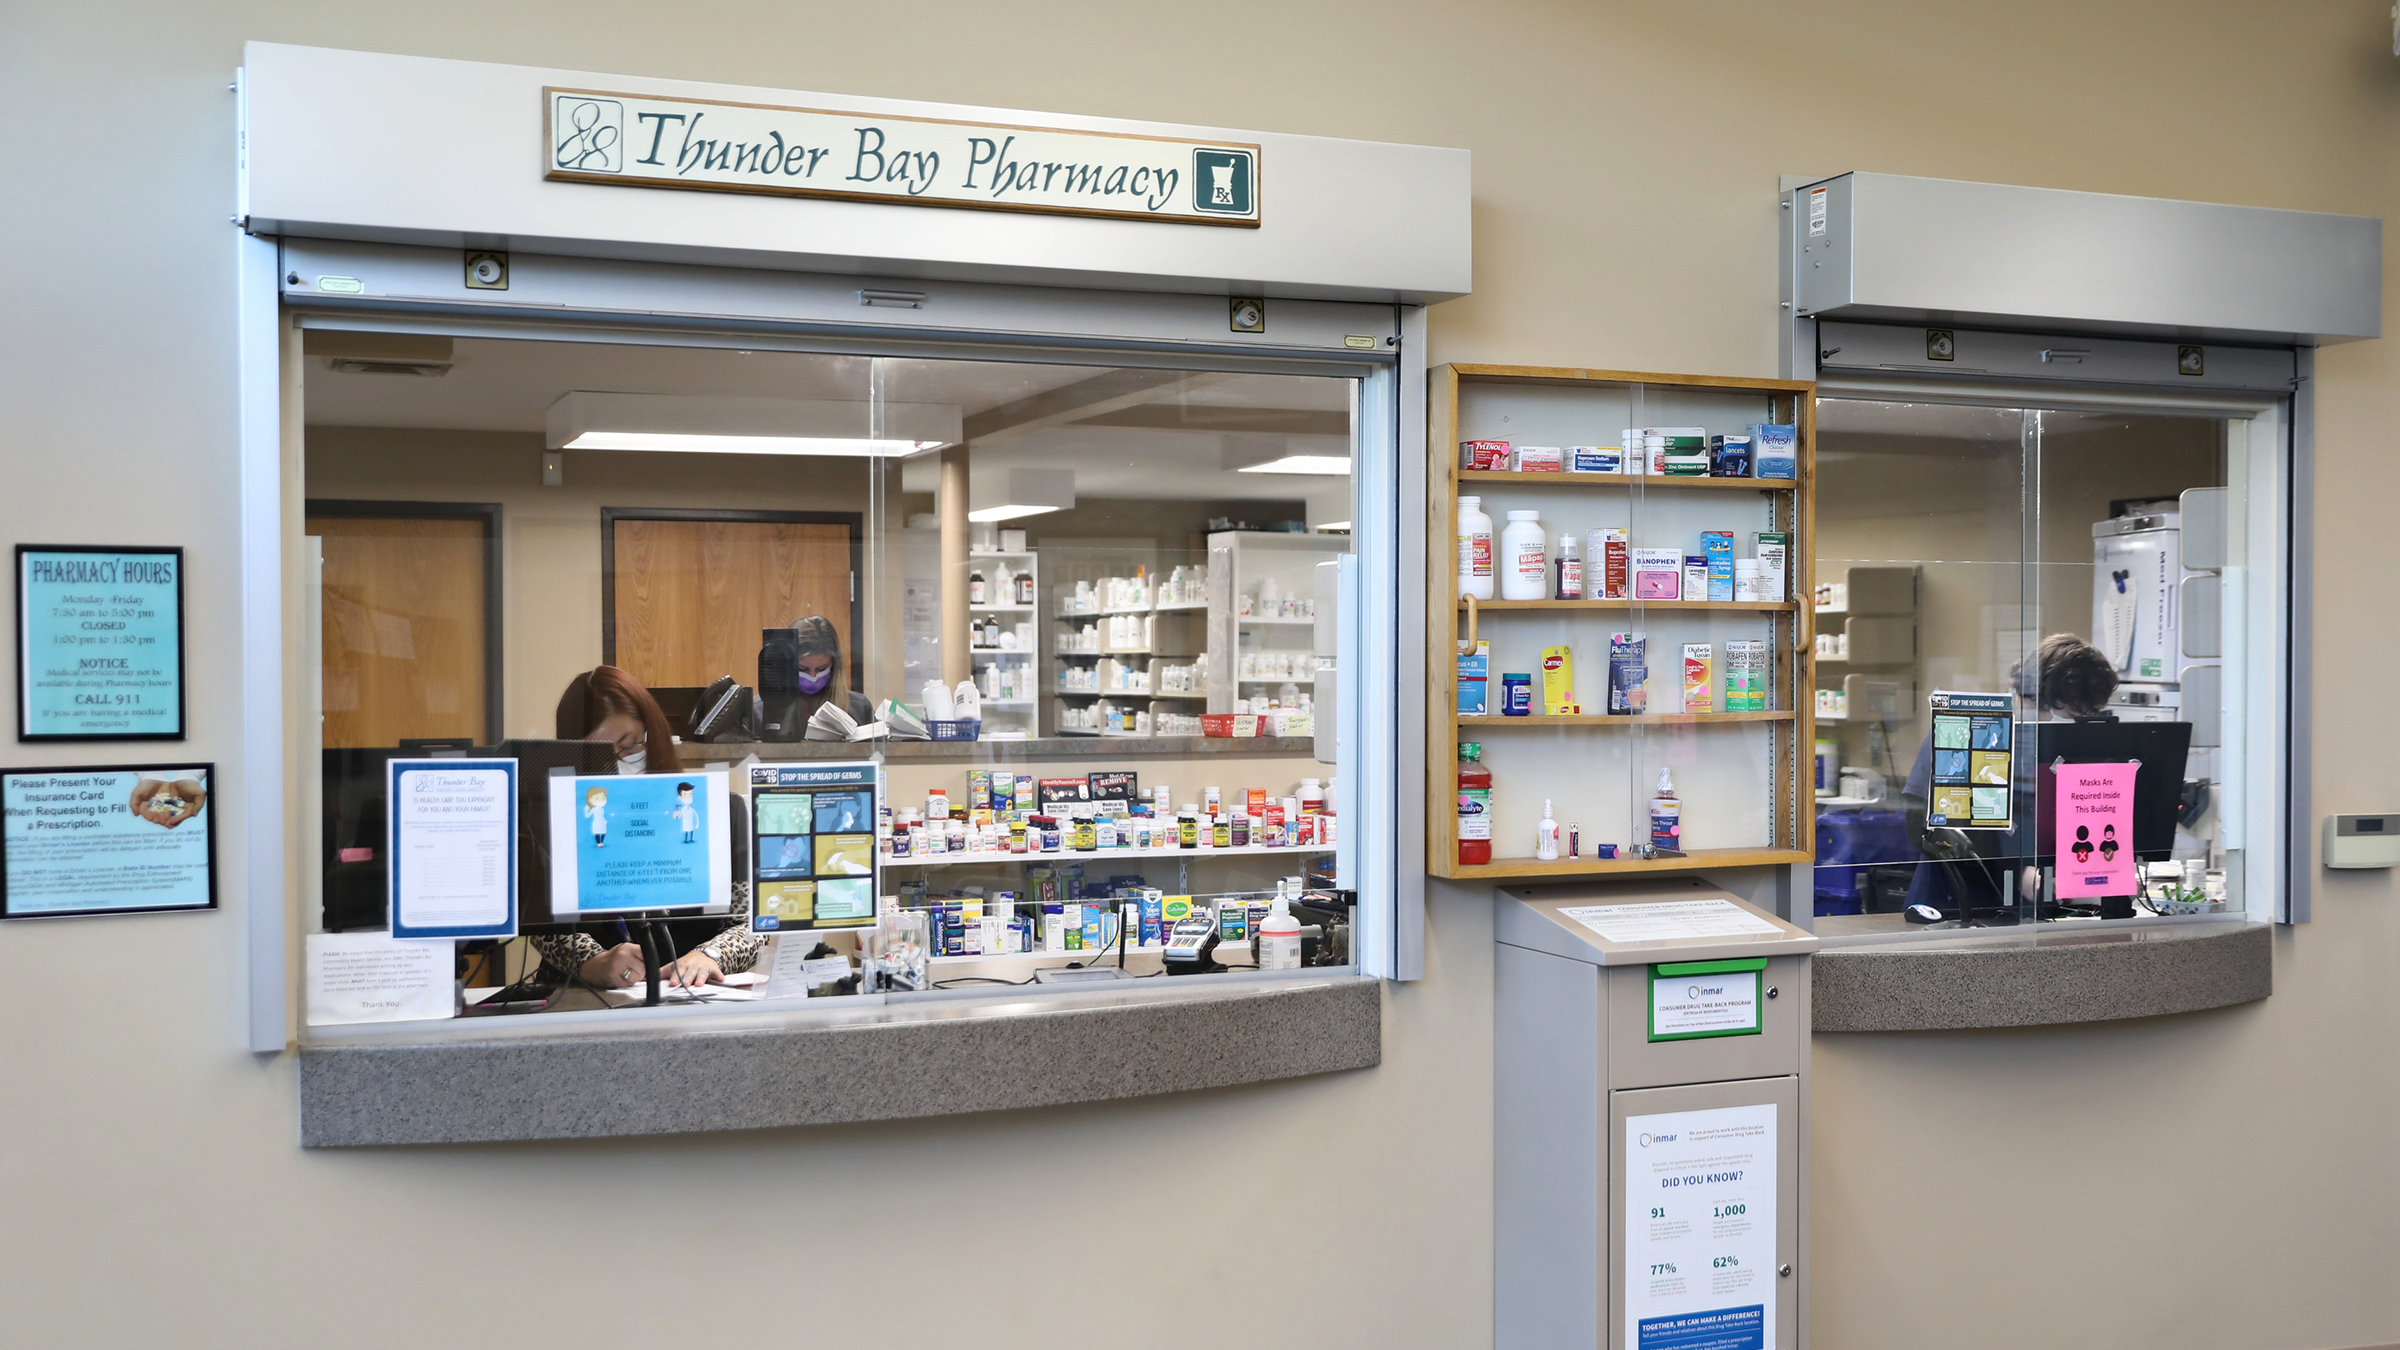 Thunder Bay Community Health Services Pharmacy